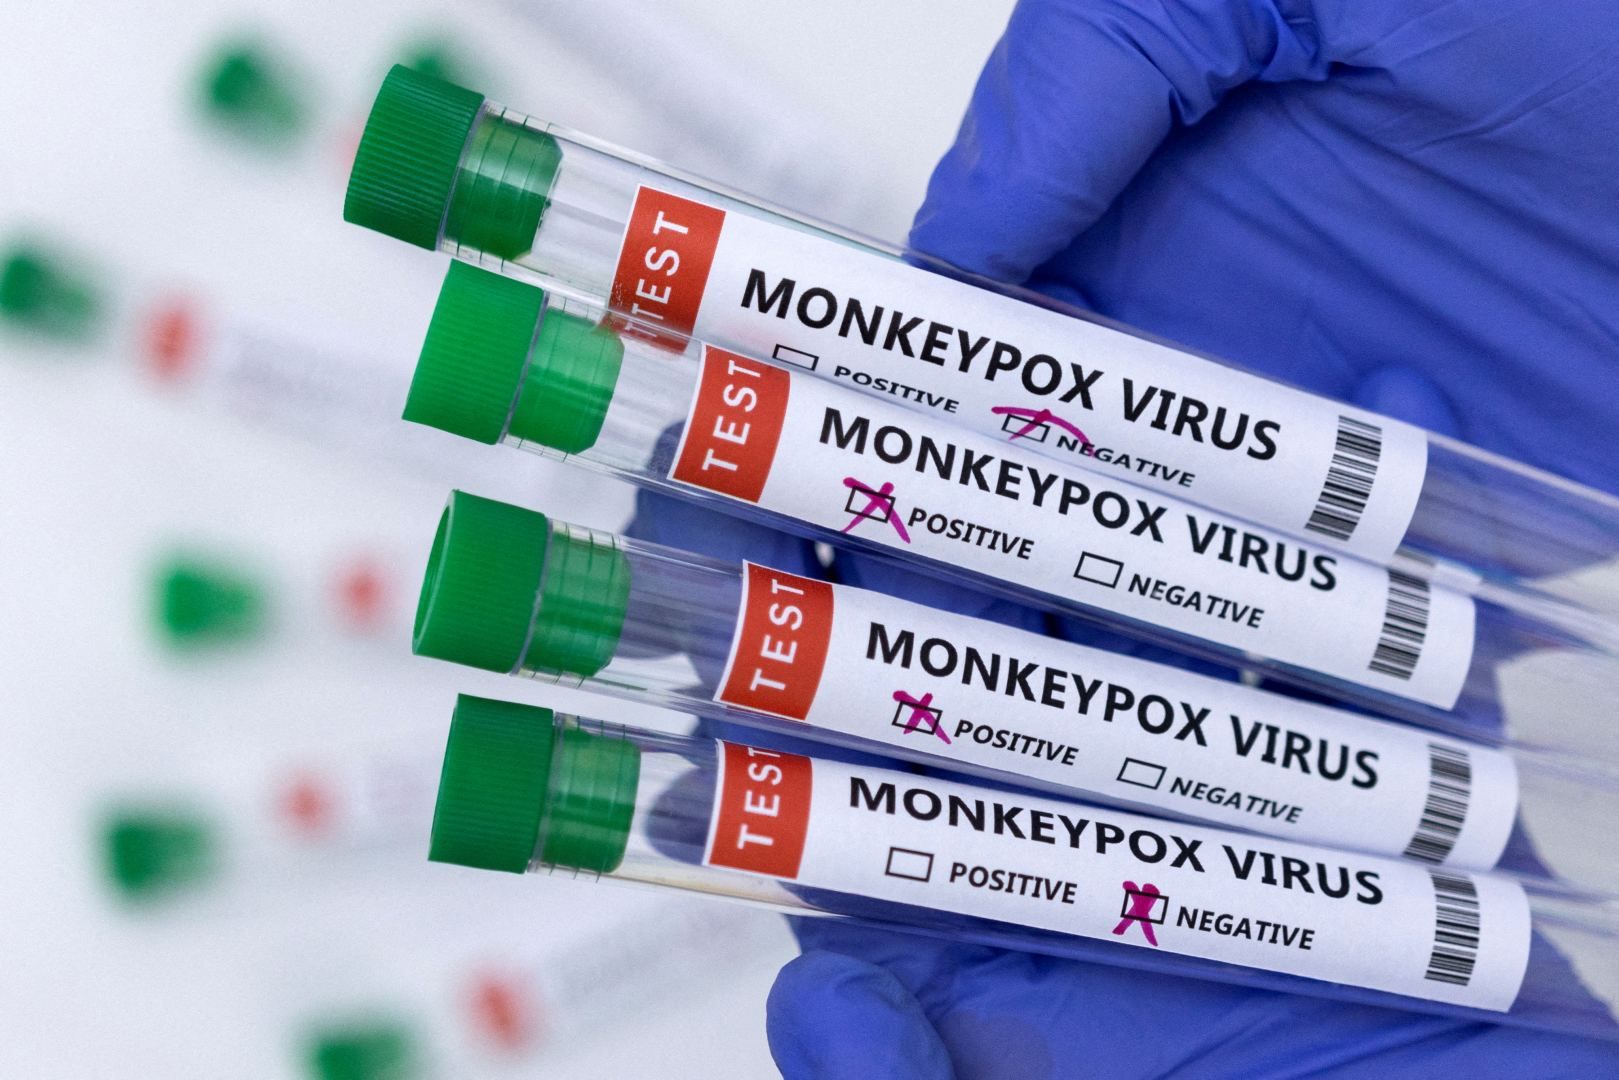 Monkeypox cases in Israel surpass 100